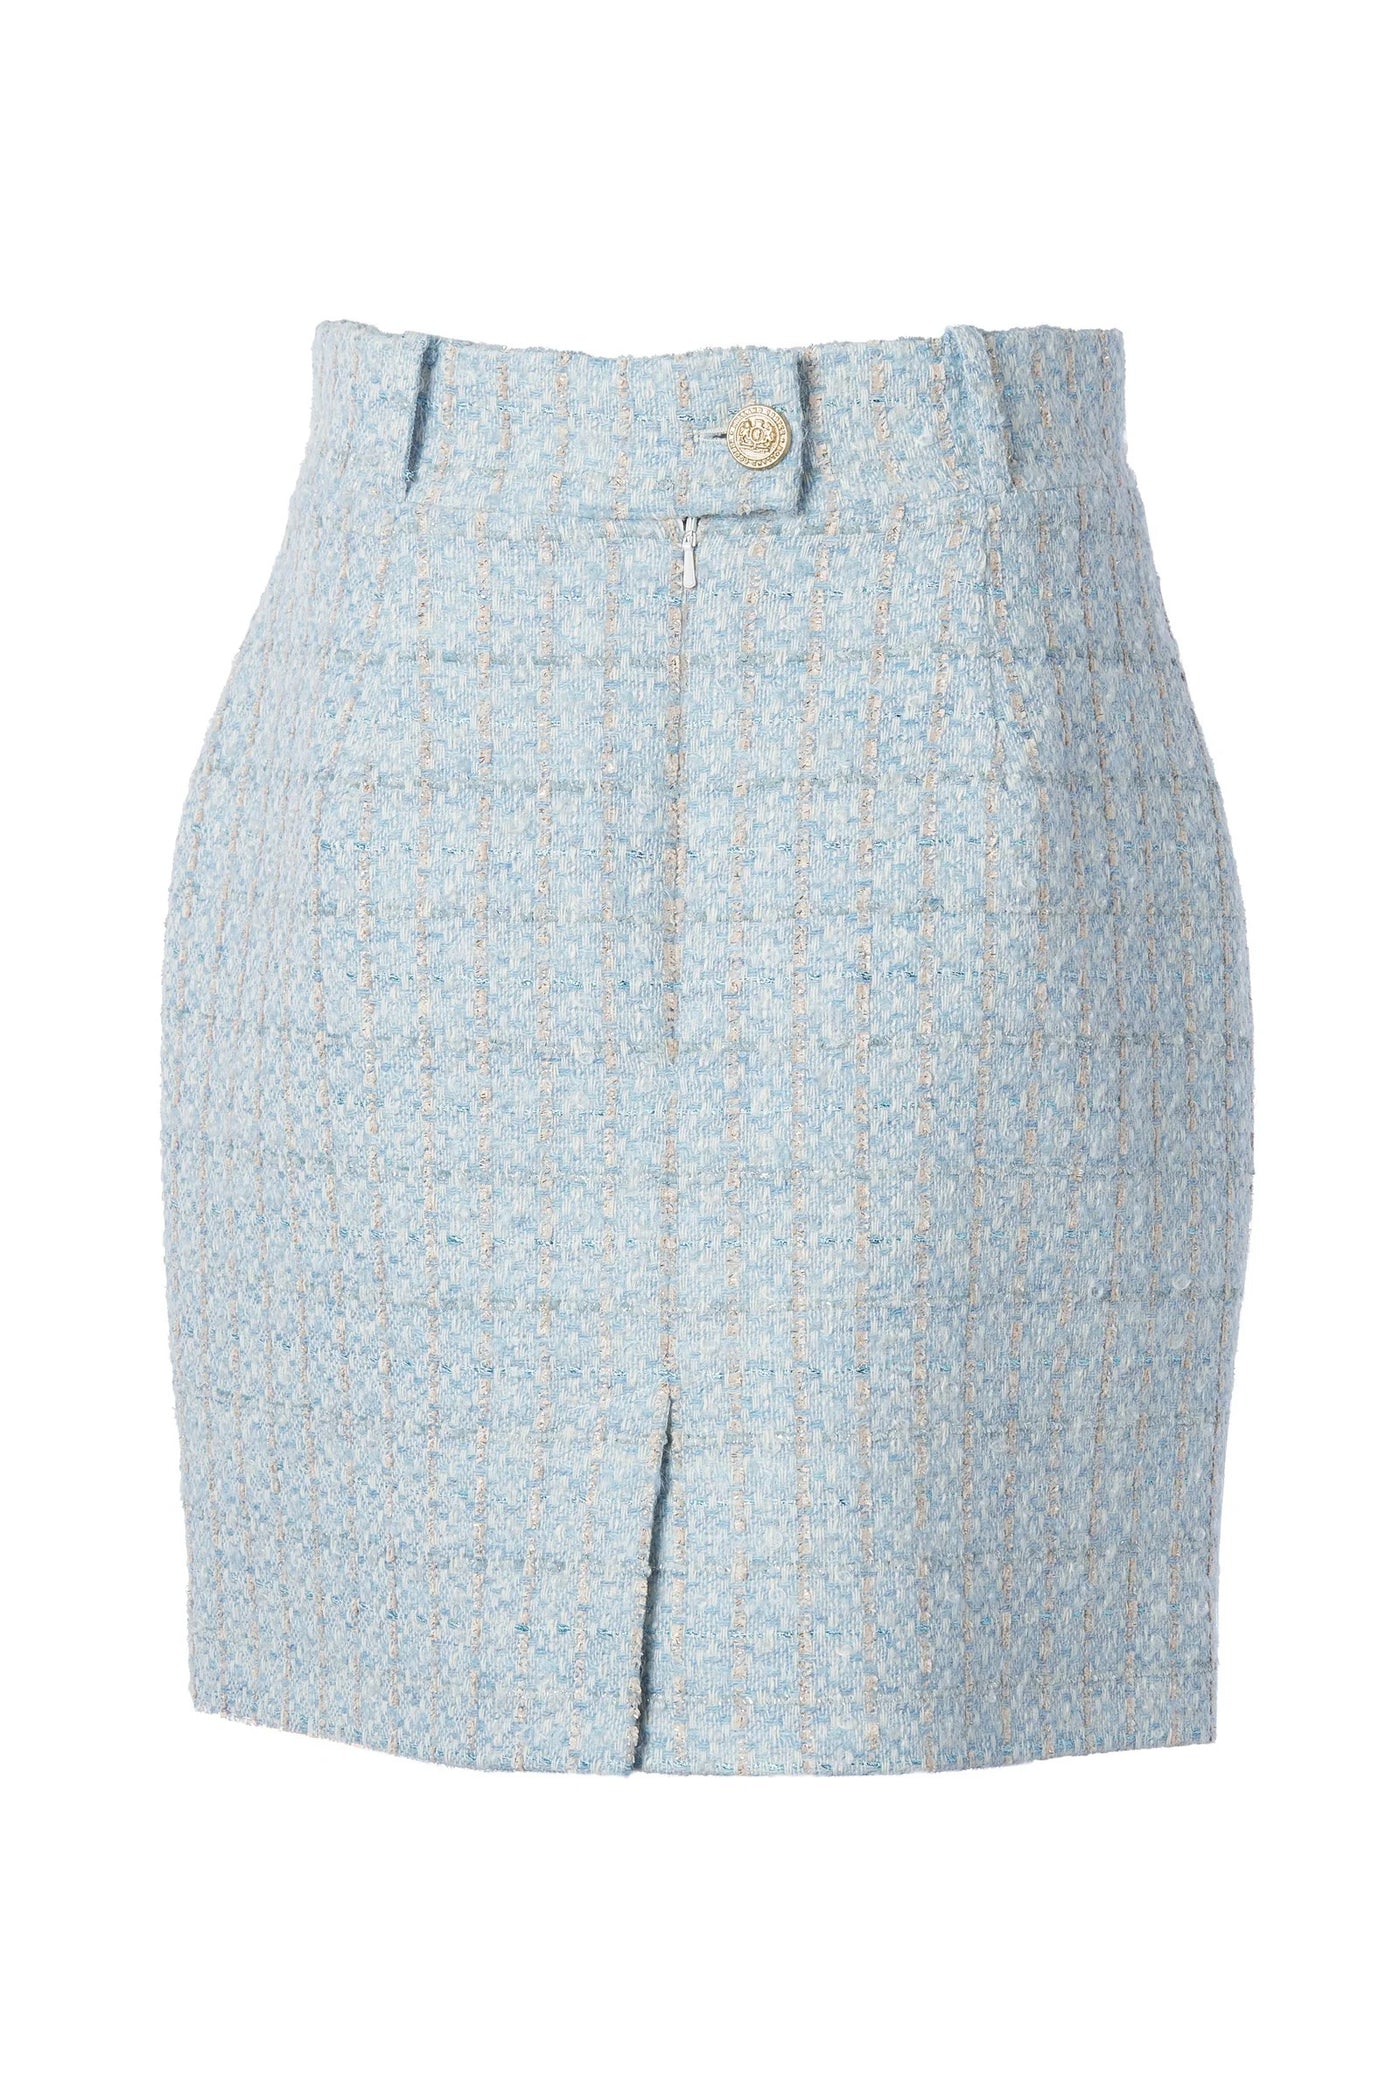 Holland Cooper Regency Skirt in Sky Blue Boucle Back